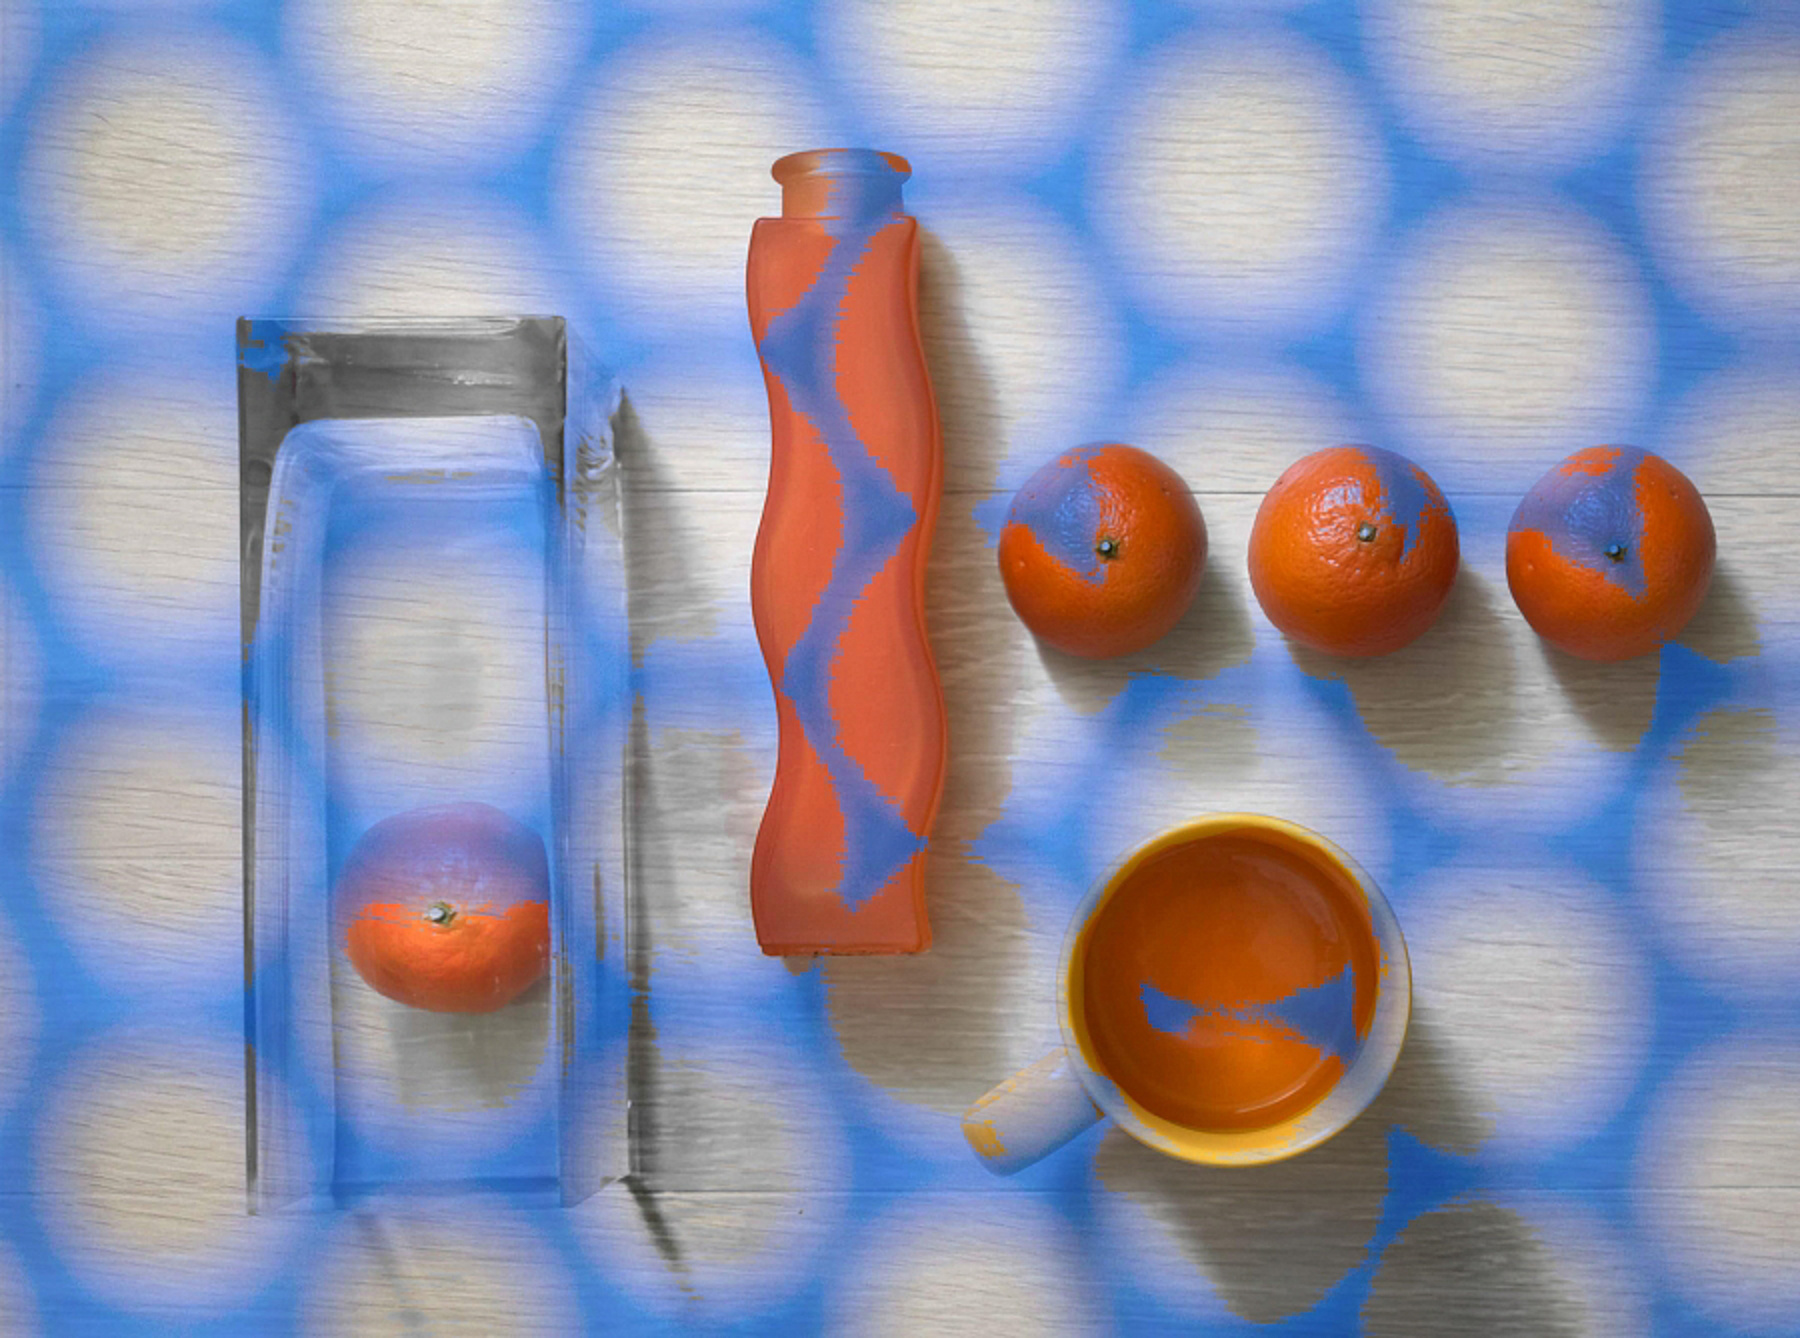 Цвет настроения - синий... Натюрморт синий оранжевый мандарины вид сверху ваза кружка цифровая обработка